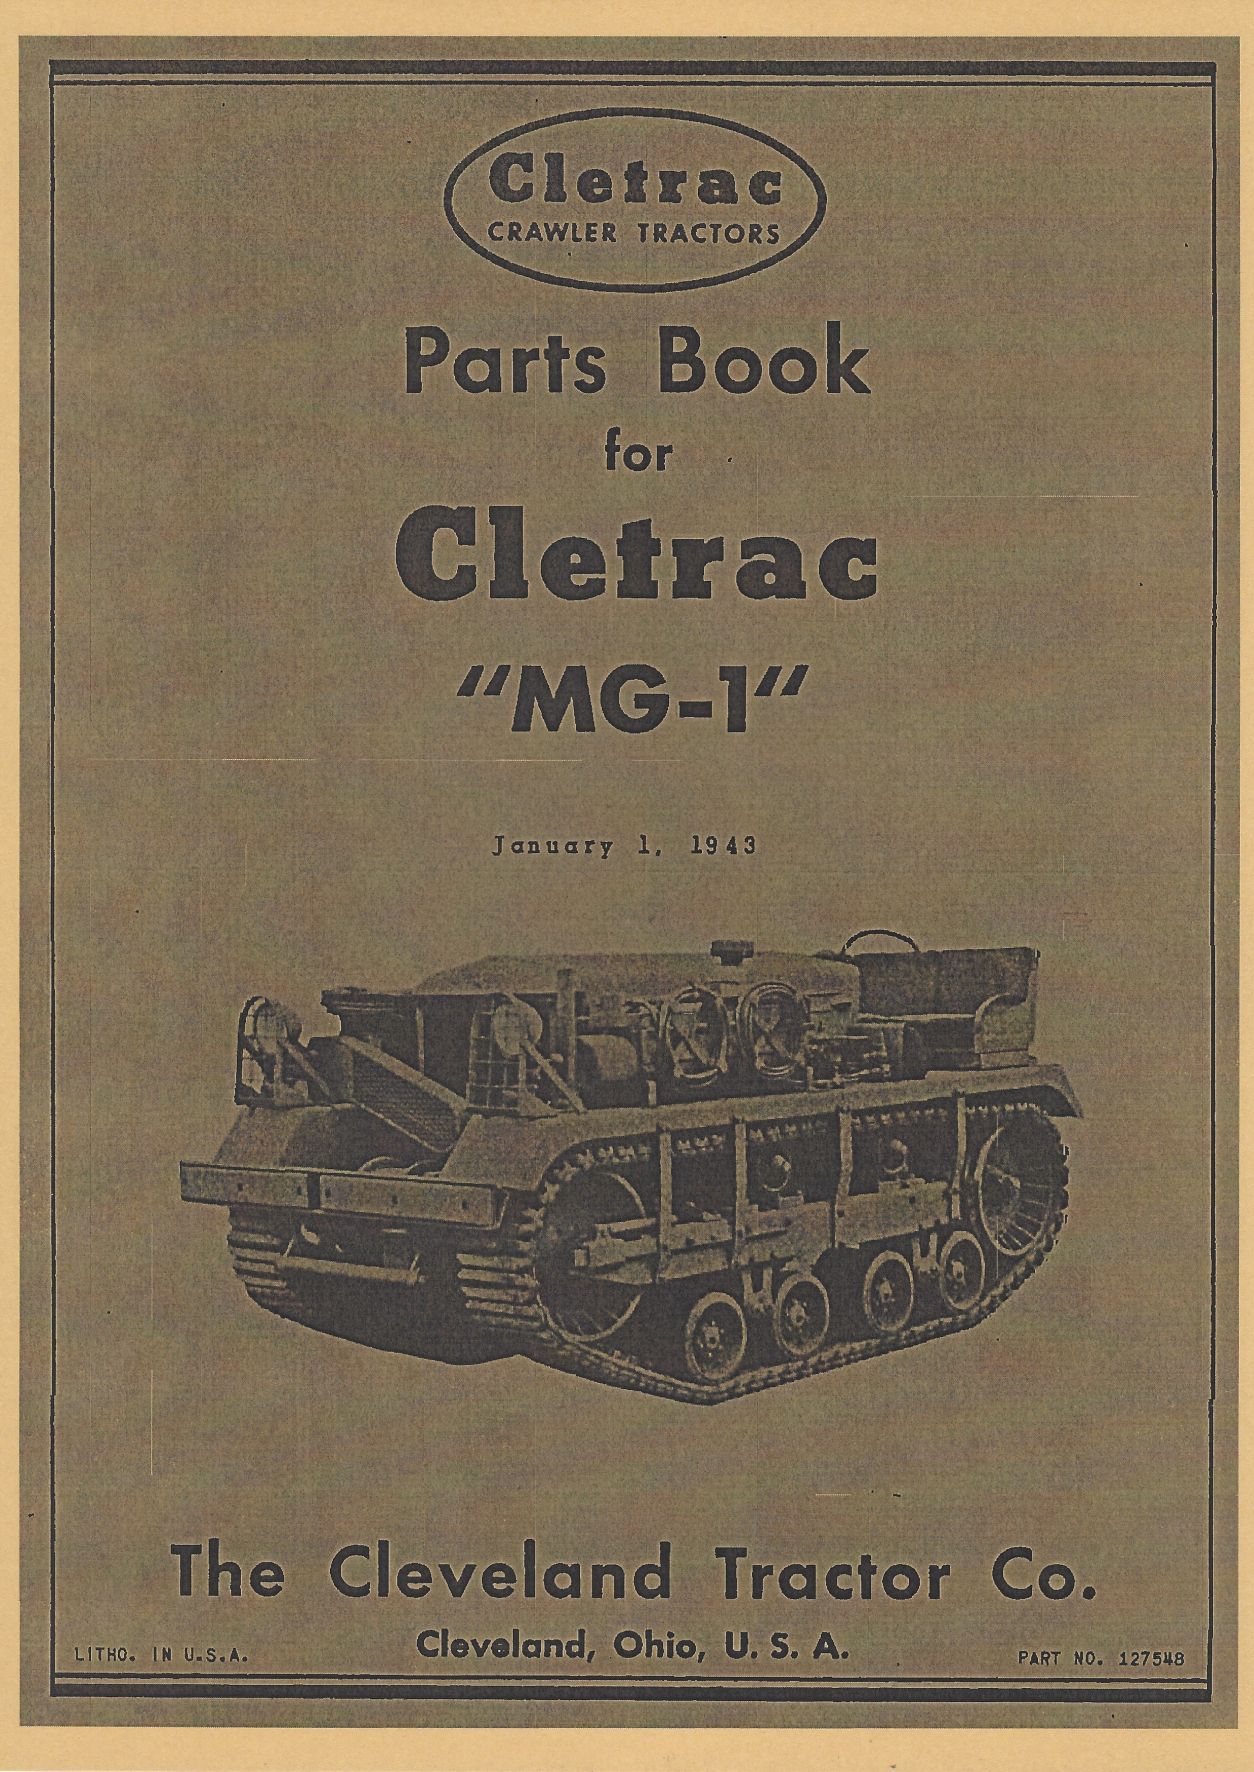 CLETRAC PARTS BOOK